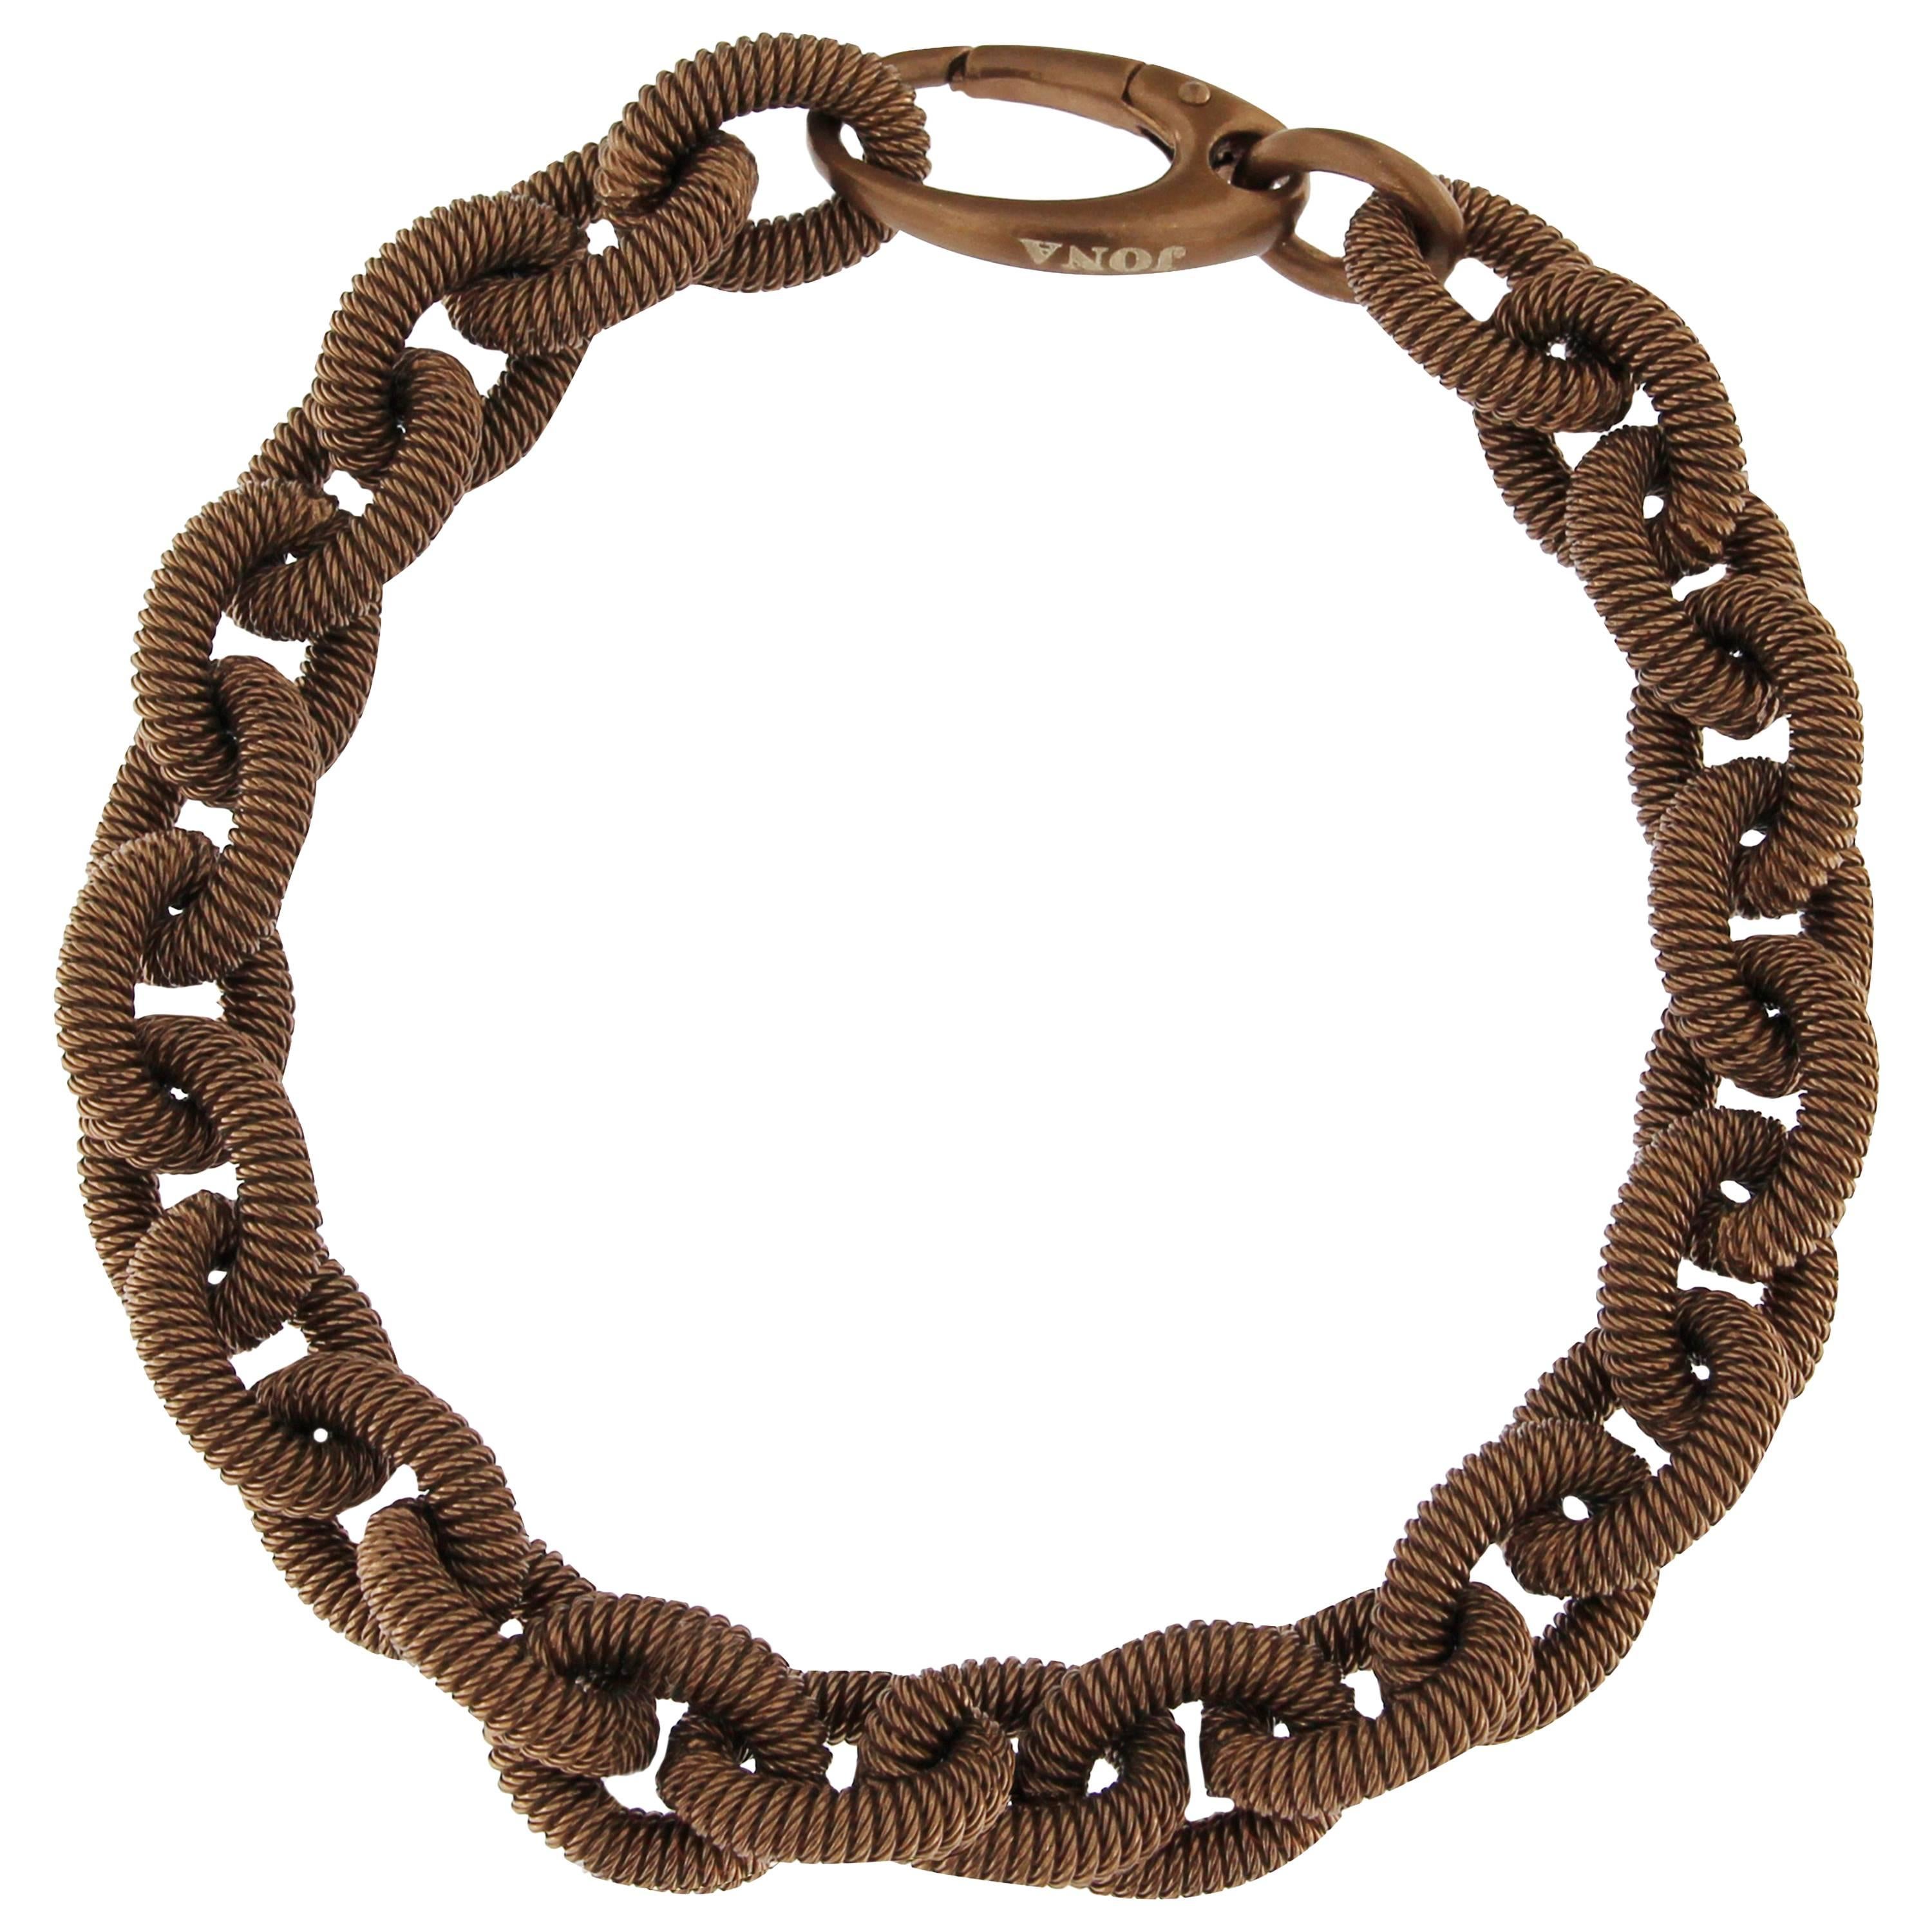 Jona Sterling Silver Link Chain Bracelet